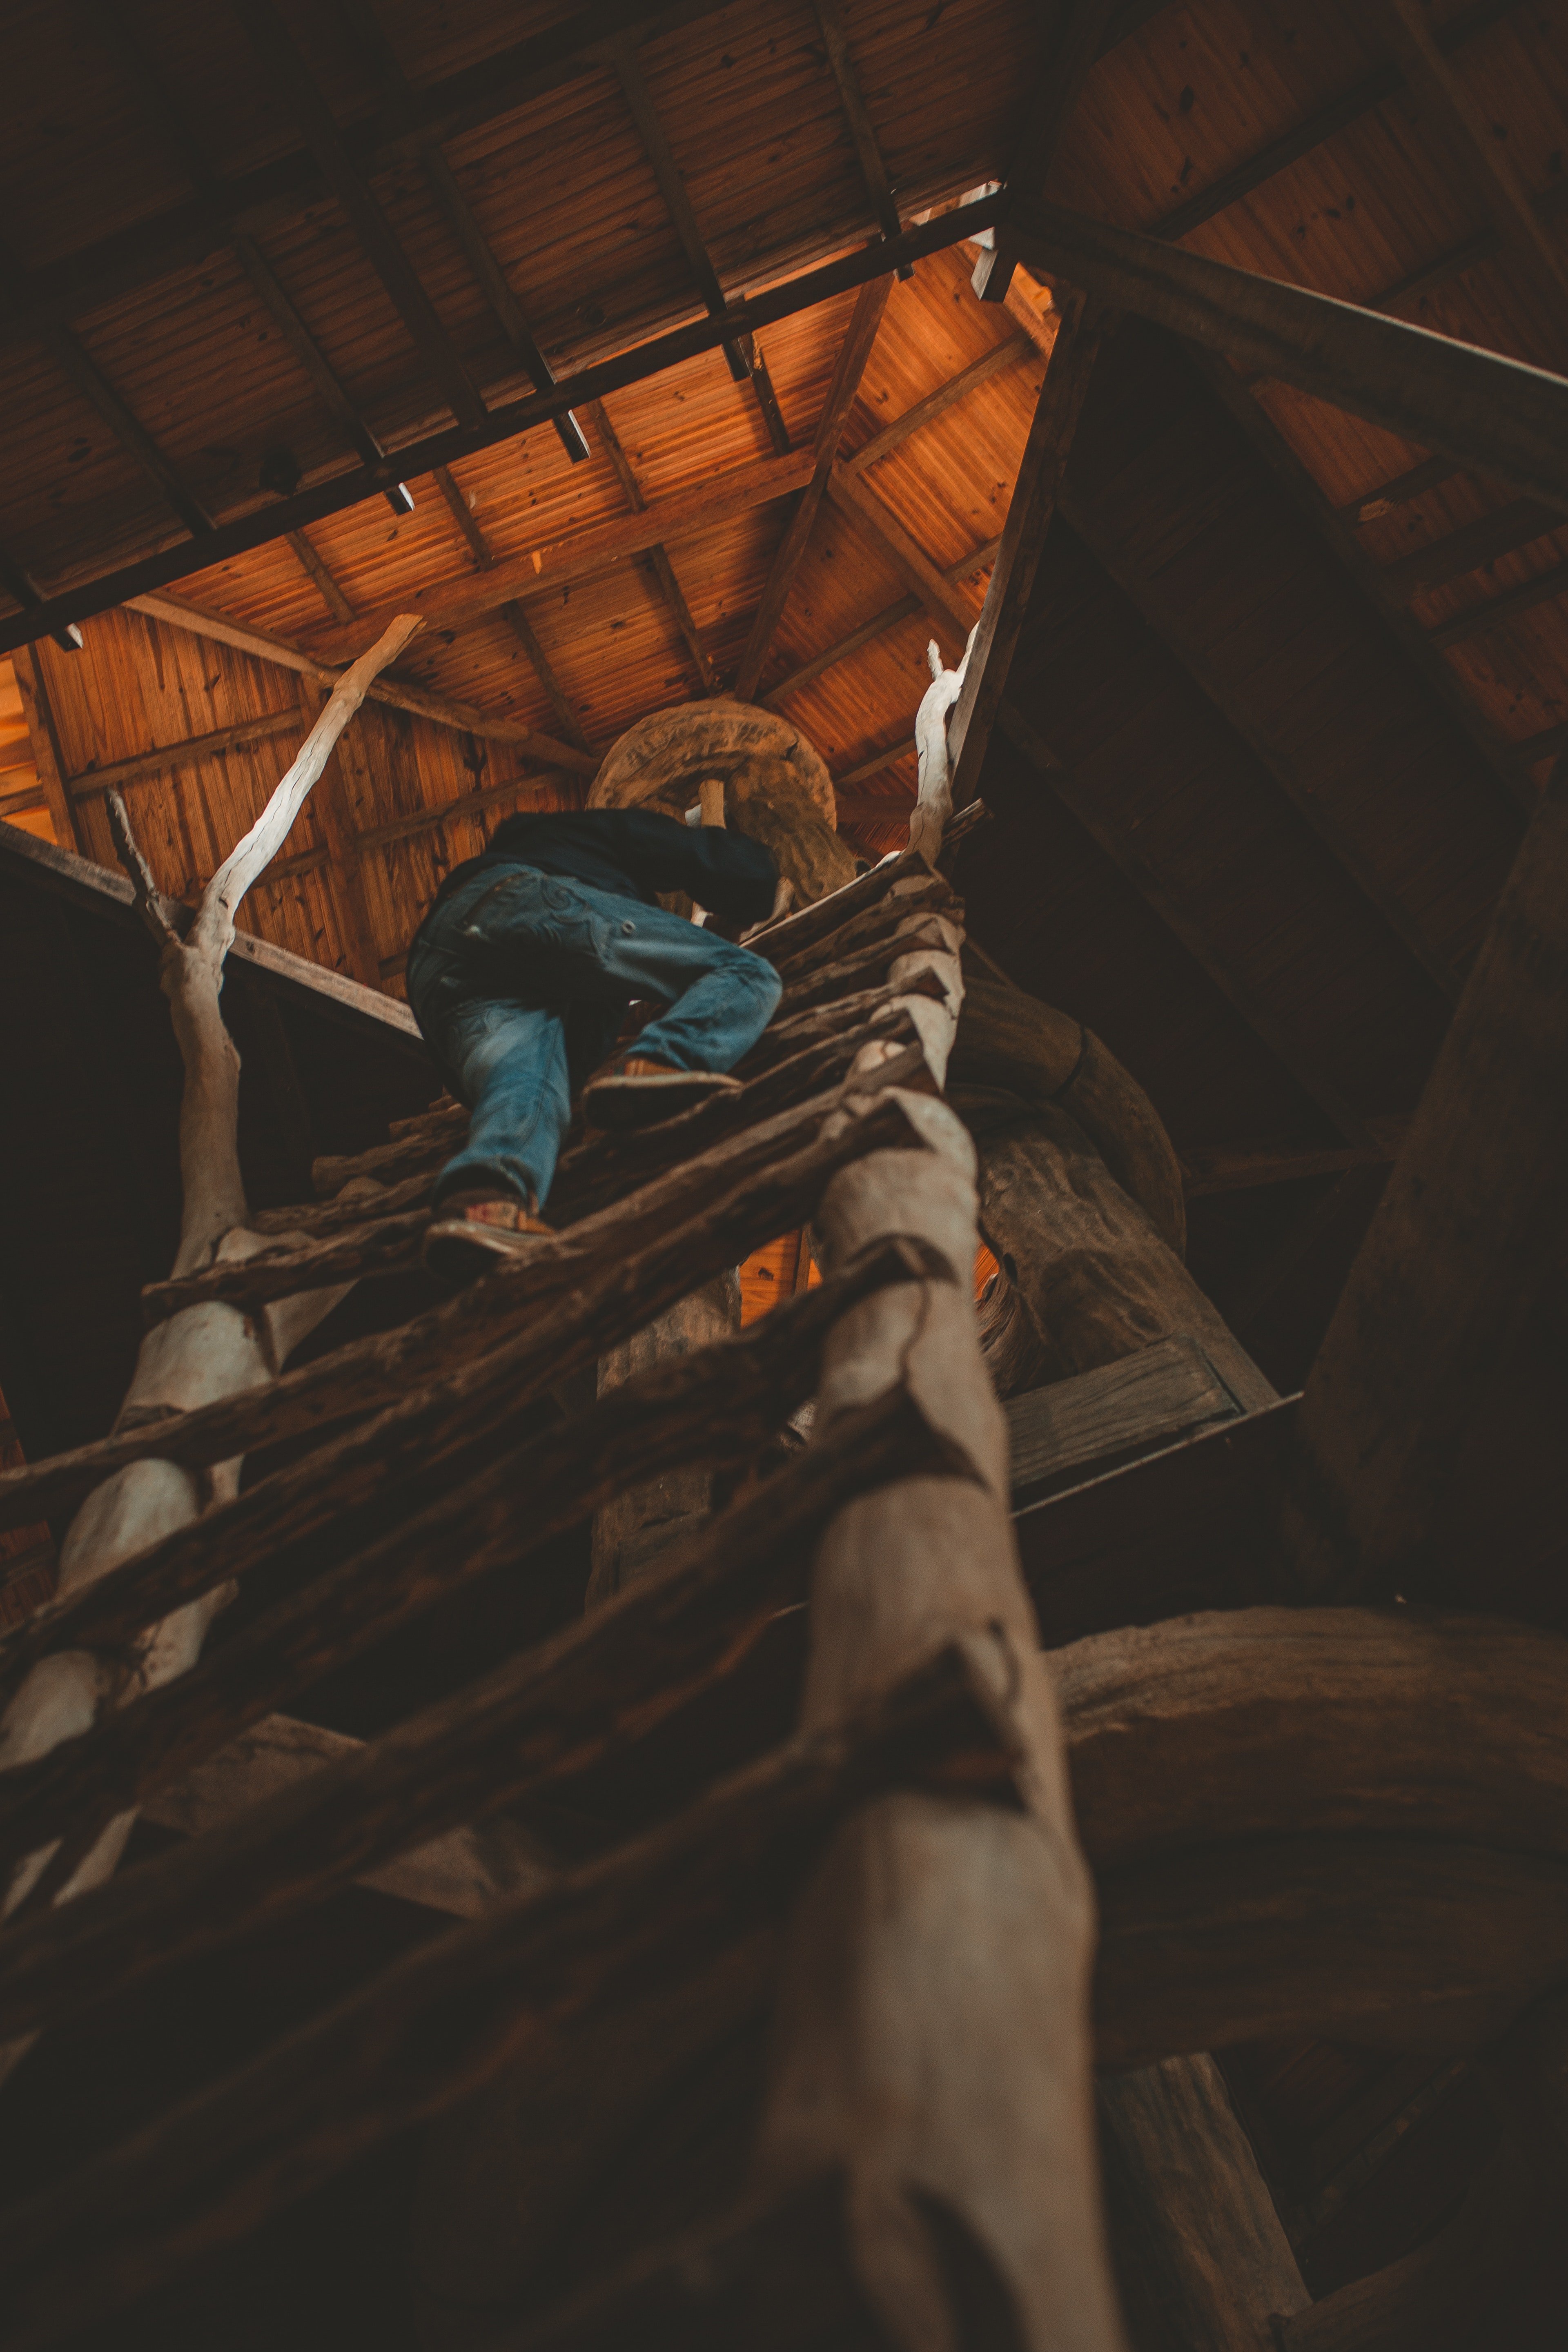 Mia ist beim Erklimmen der Leiter zum Baumhaus gestürzt. | Quelle: Pexels